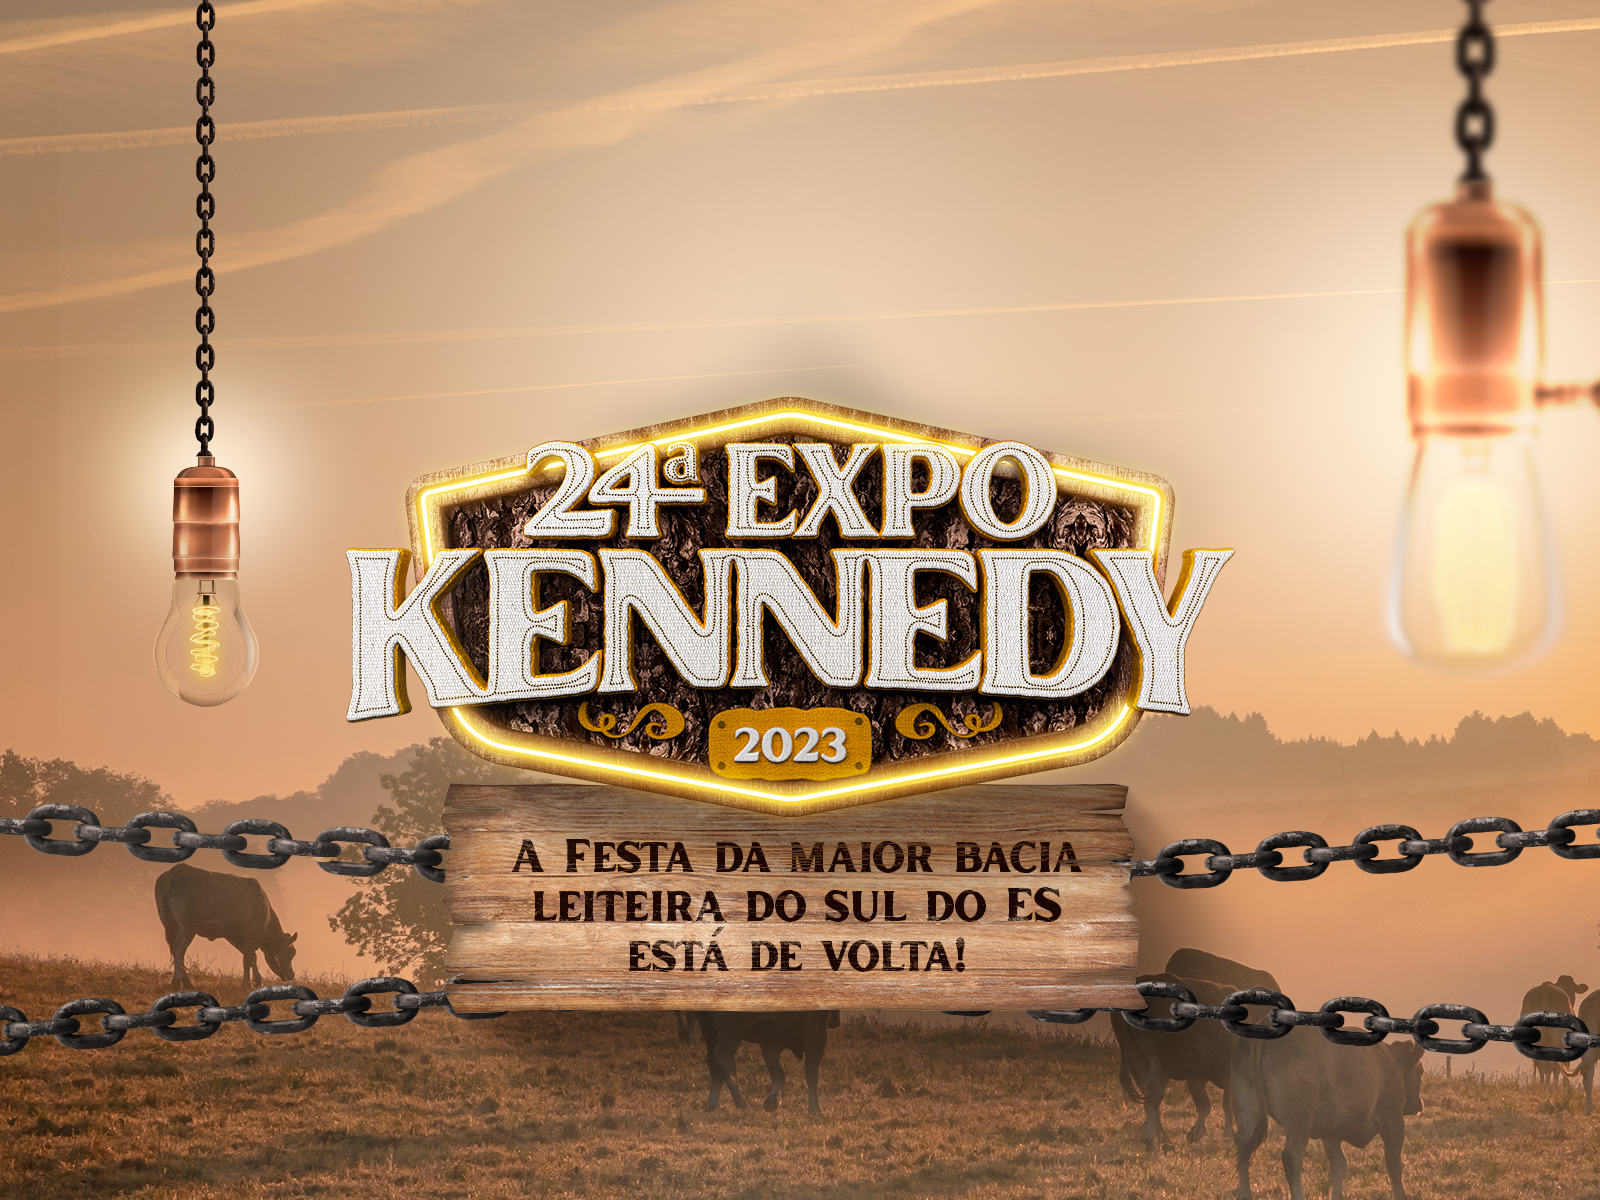 Expo Kennedy 2023: Confira a programação